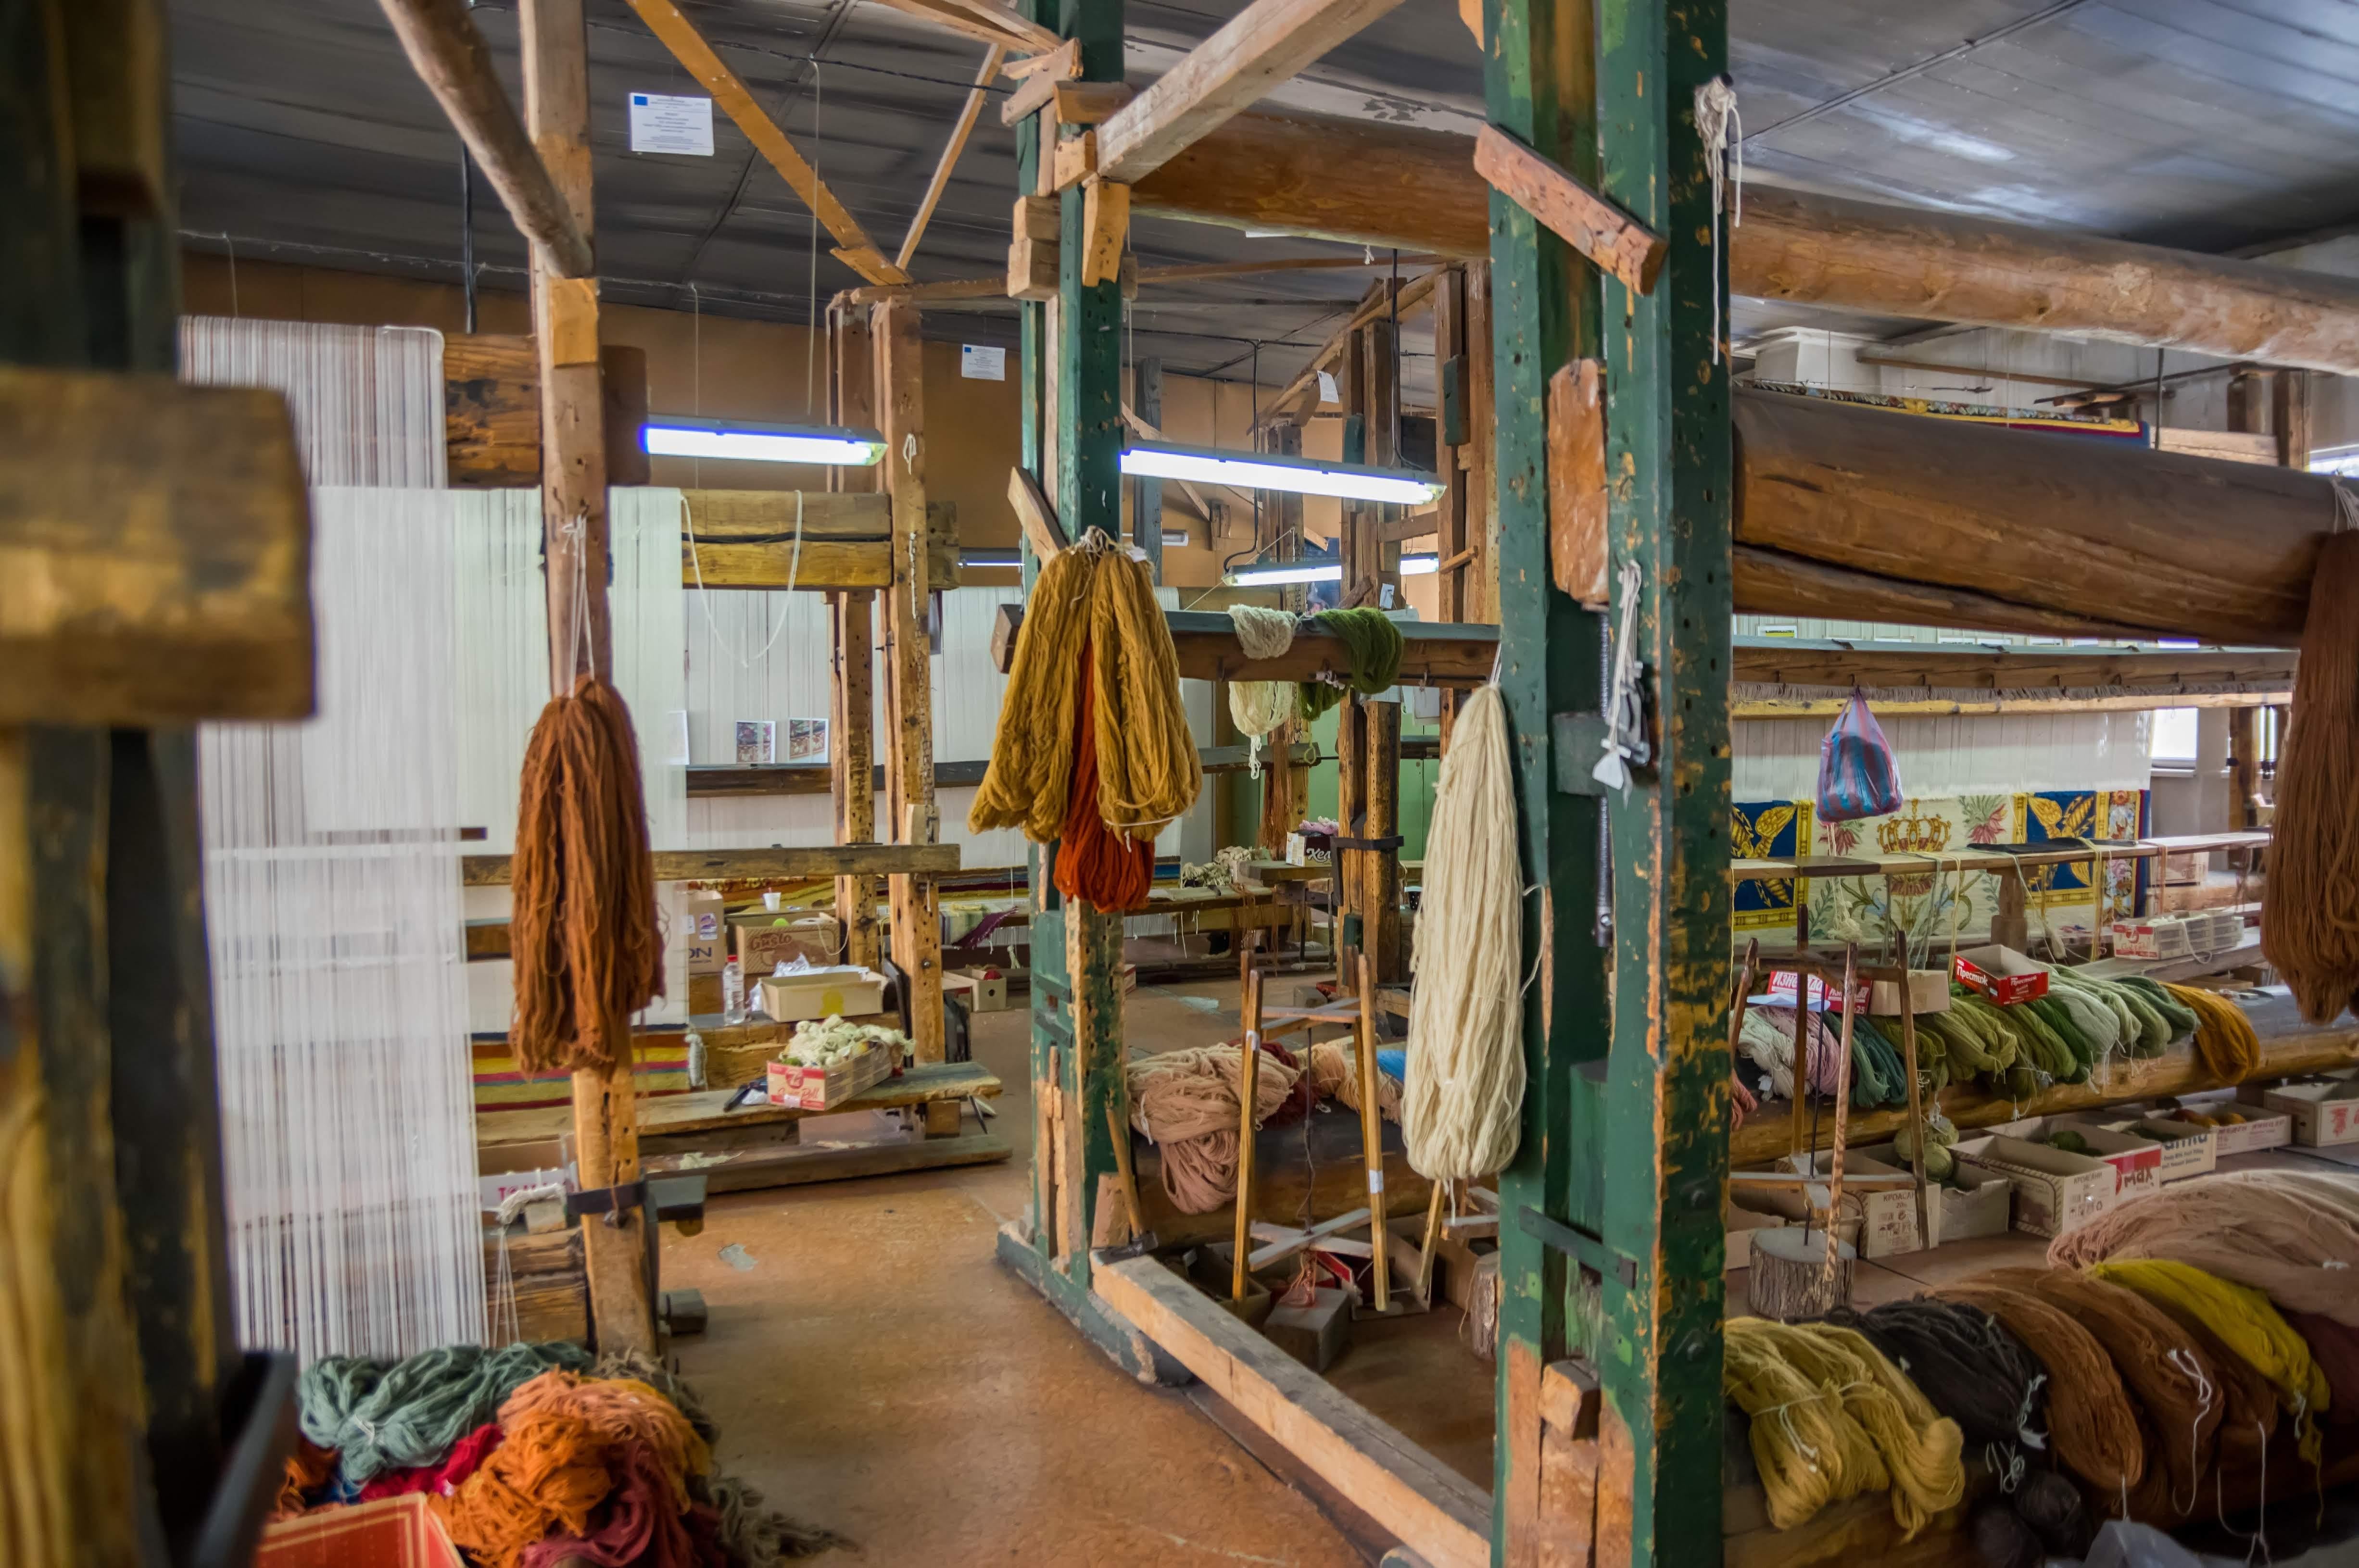 Code by RANKIN RUGS - traditionell handgeknüpft in Bulgarien aus 100 % einheimischer bulgarischer Wolle (~125.000 Knoten pro Quadratmeter)

Alle Teppiche werden in einer kleinen familiengeführten Werkstatt in Bulgarien von den letzten verbliebenen